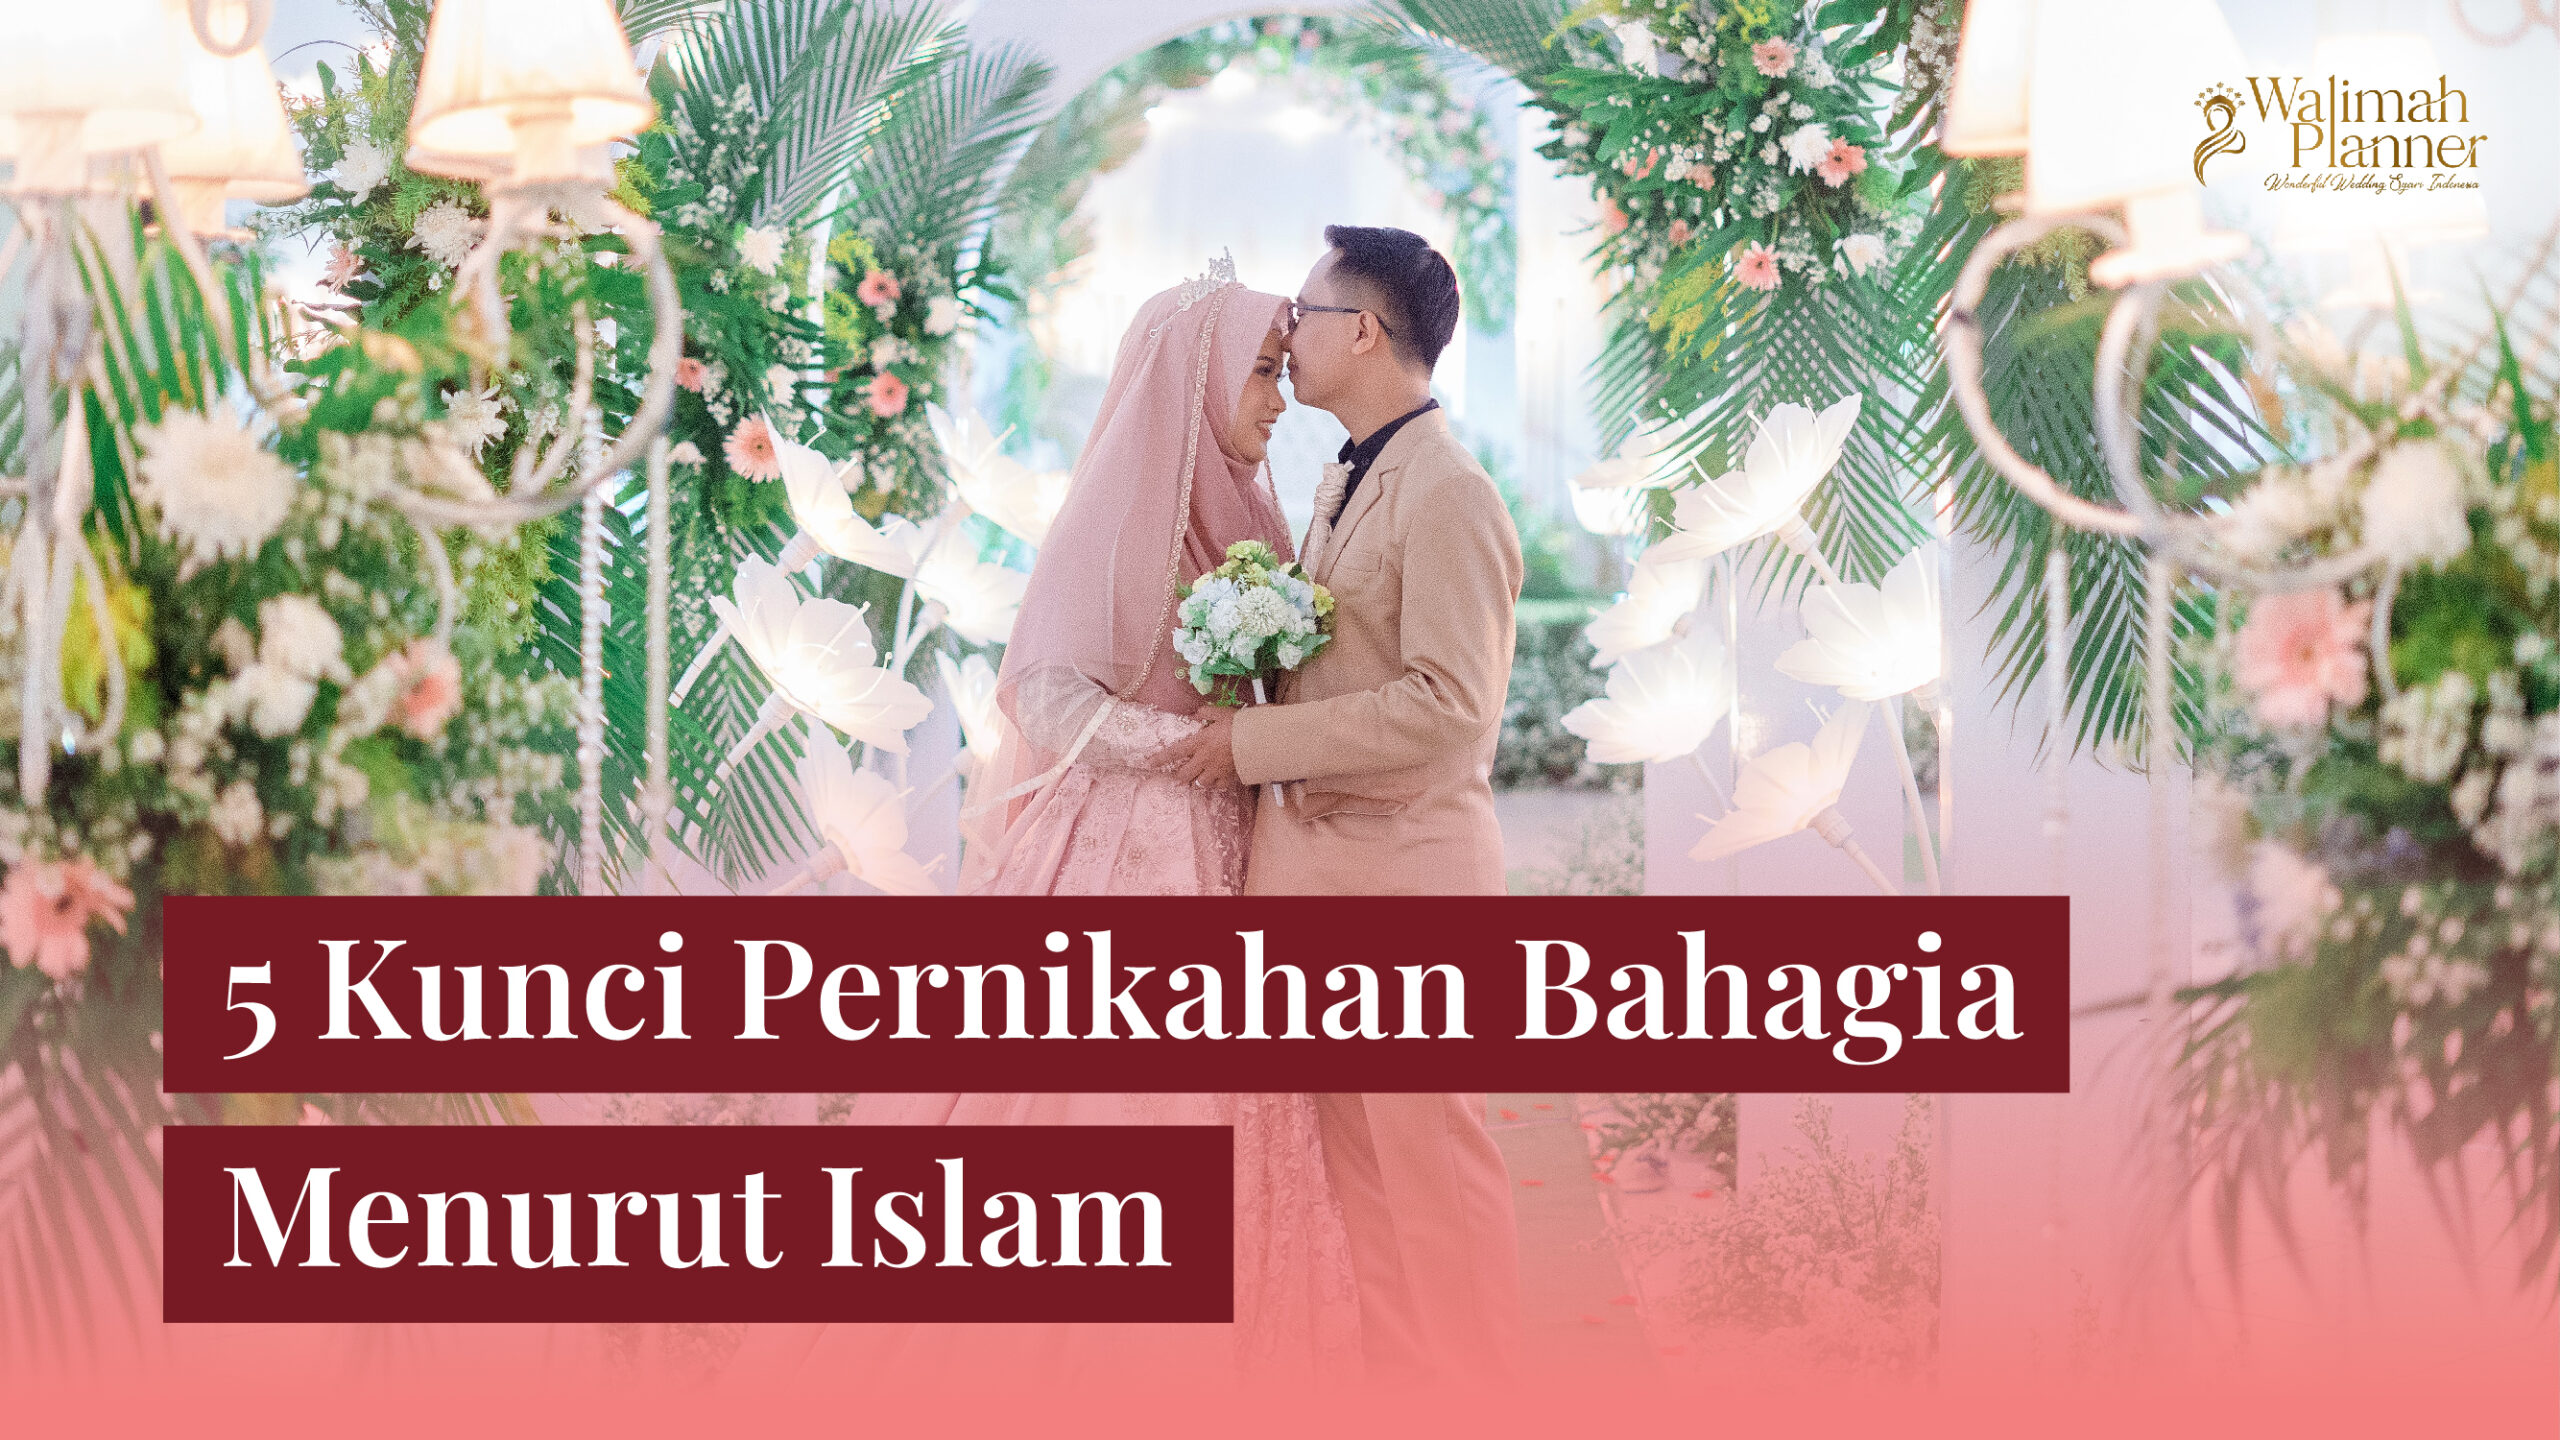 5 Kunci Pernikahan Bahagia Menurut Islam